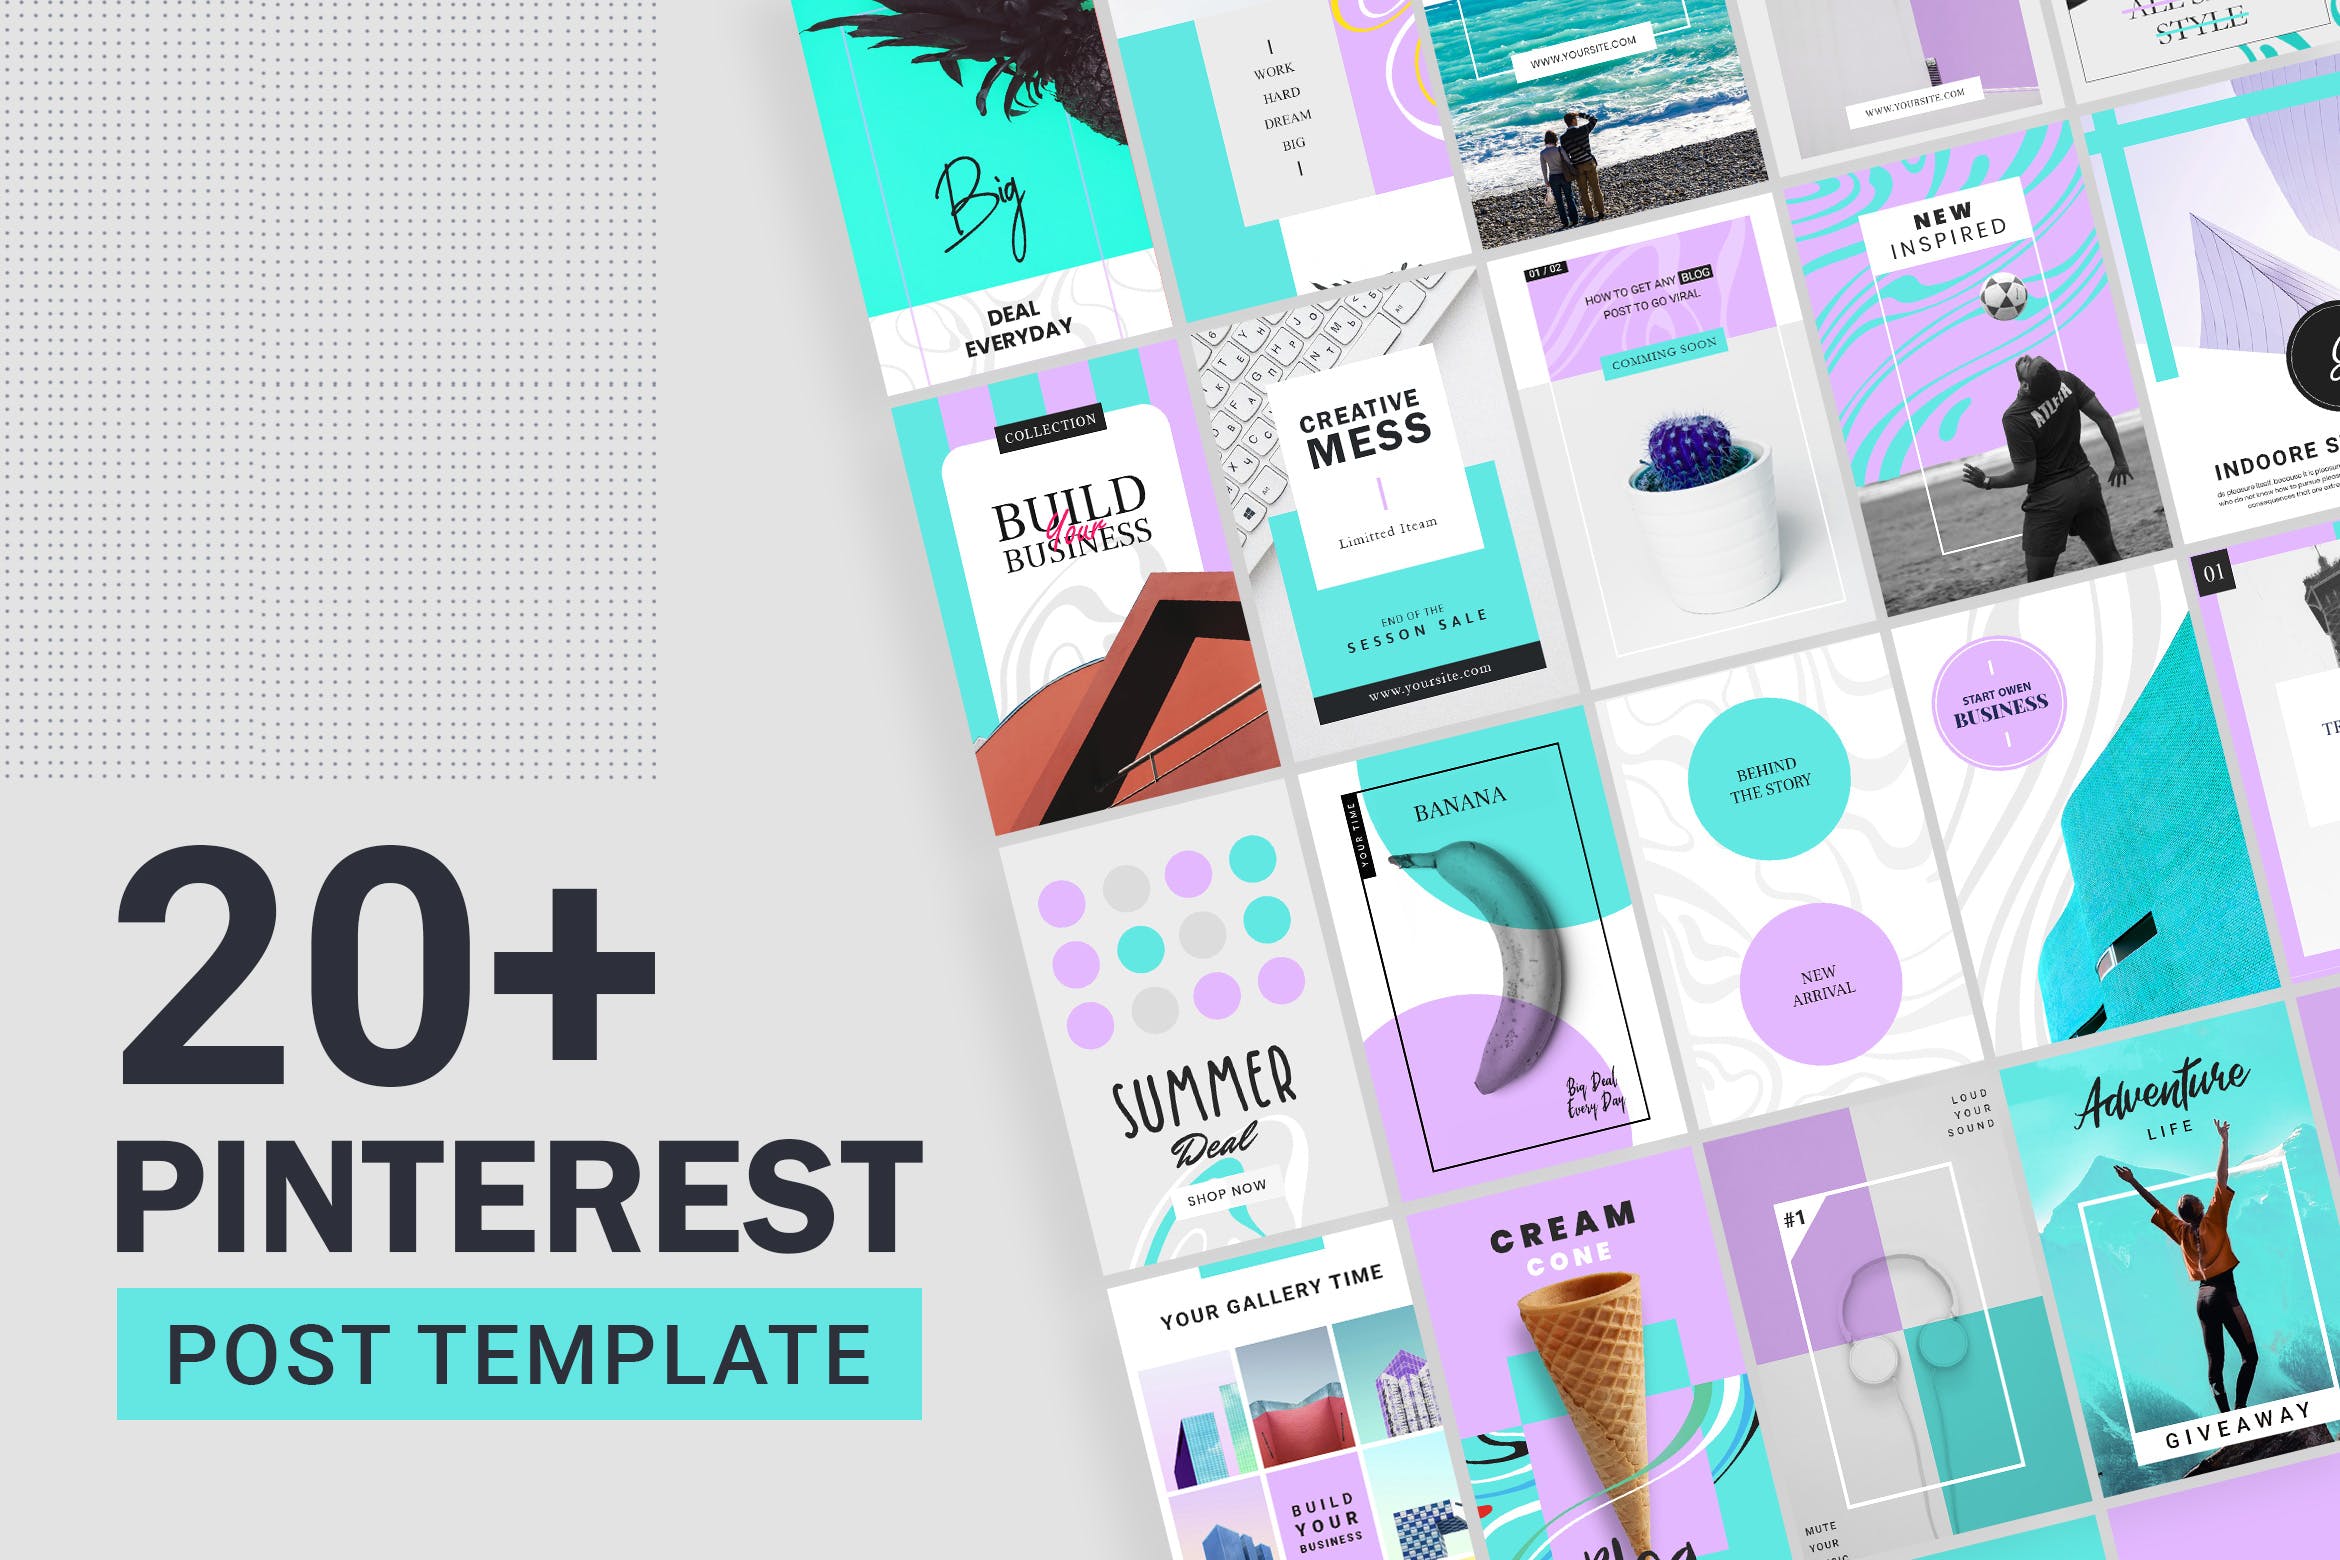 20+Pinterest社交促销广告设计模板蚂蚁素材精选素材包 Pinterest Post Templates插图